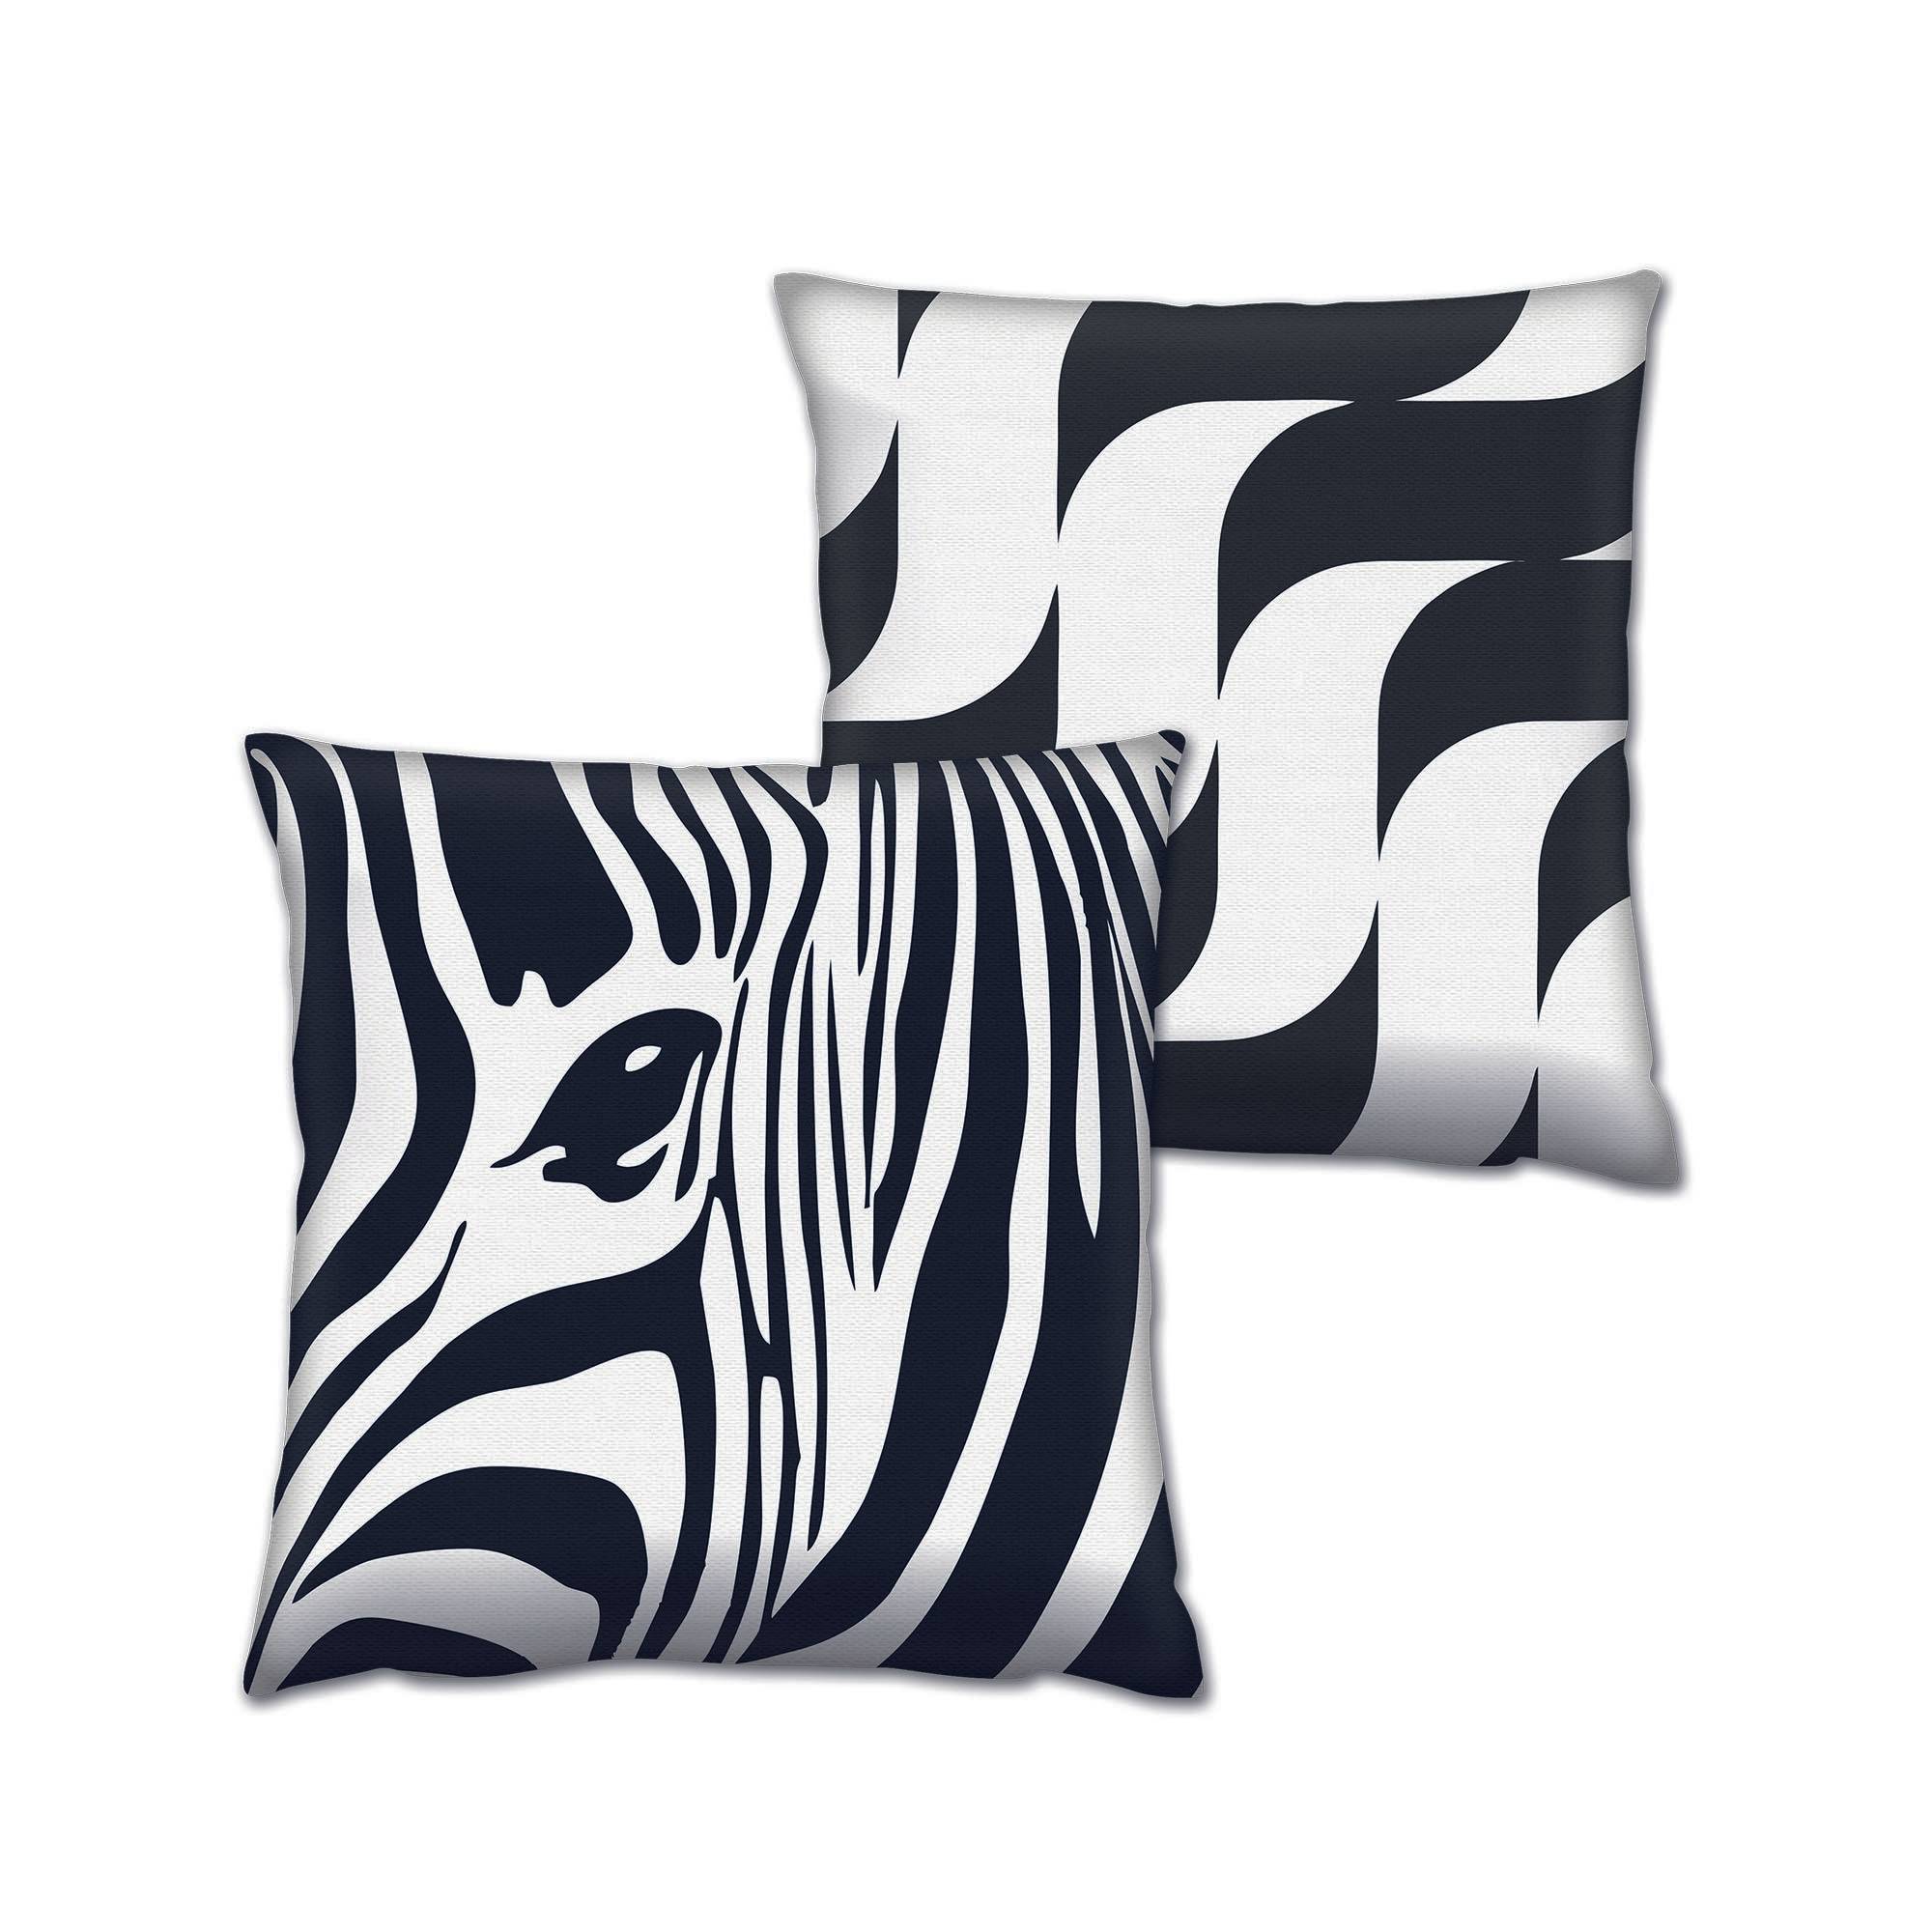 Set bestehend aus 2 passenden Kissen Zebra 43 x 43 cm Baumwolle Polyester Schwarz und Weiß